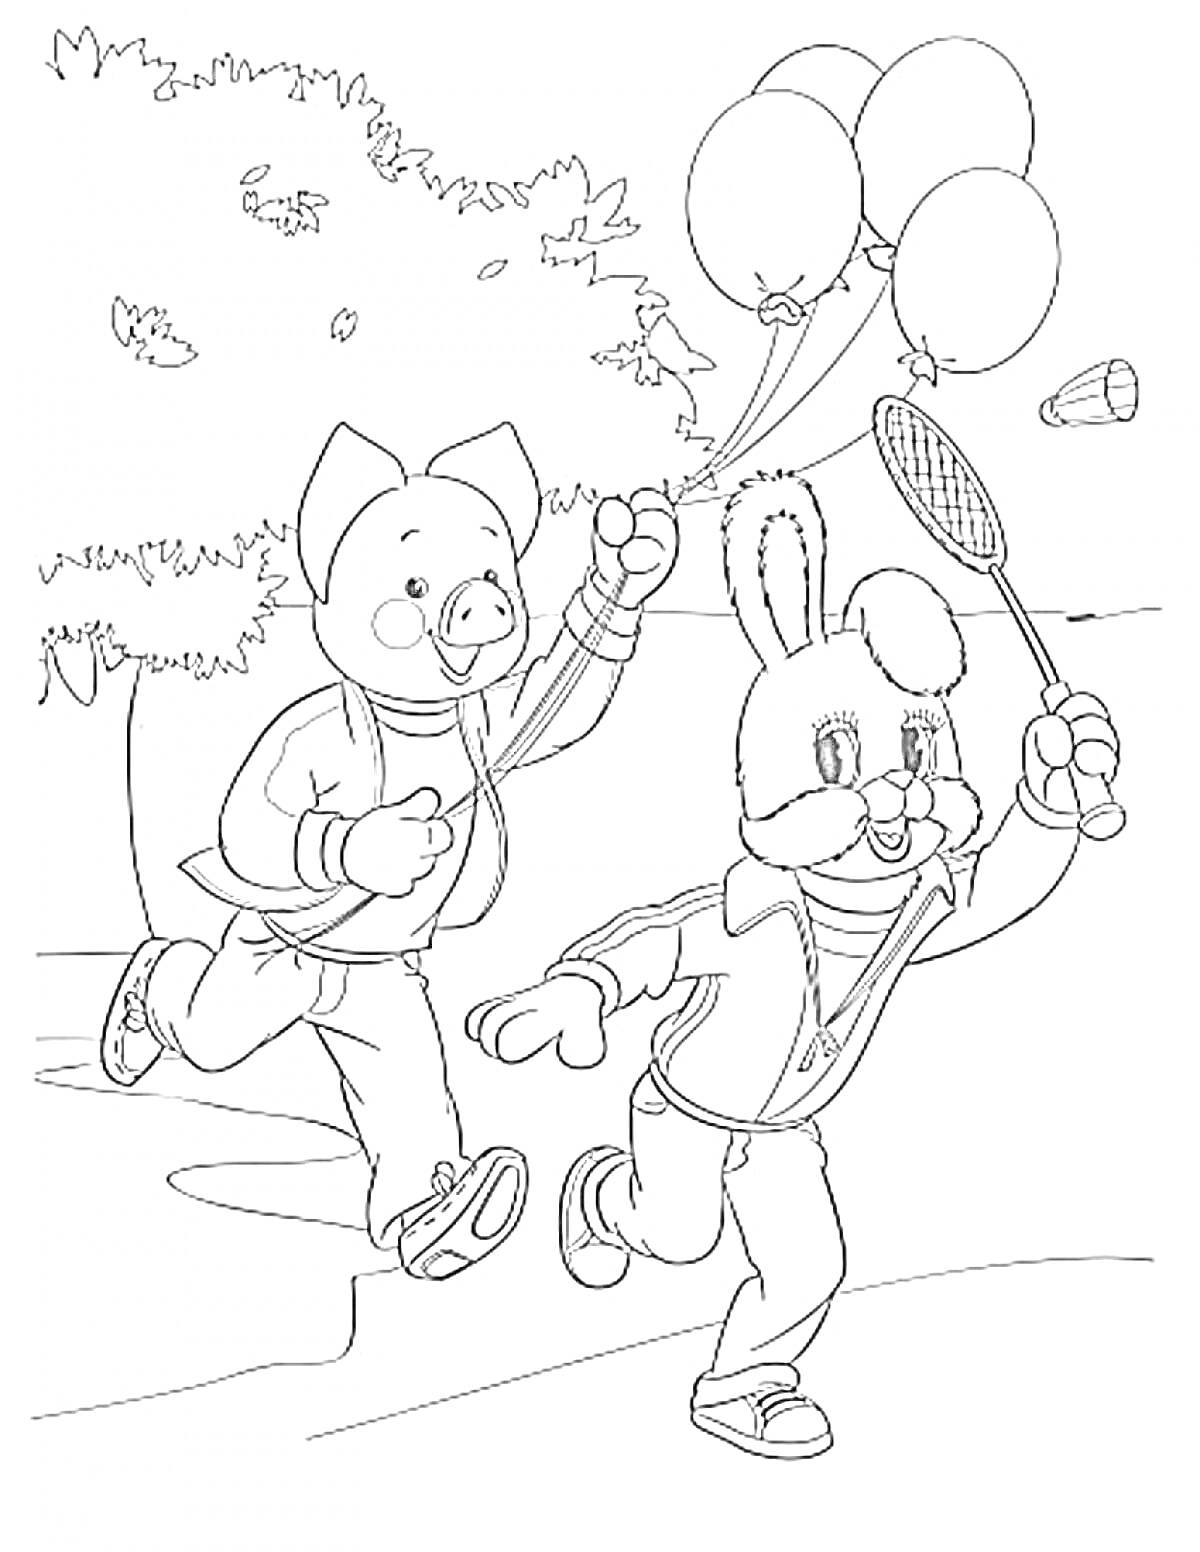 Поросёнок с воздушным шаром и заяц с ракеткой на прогулке